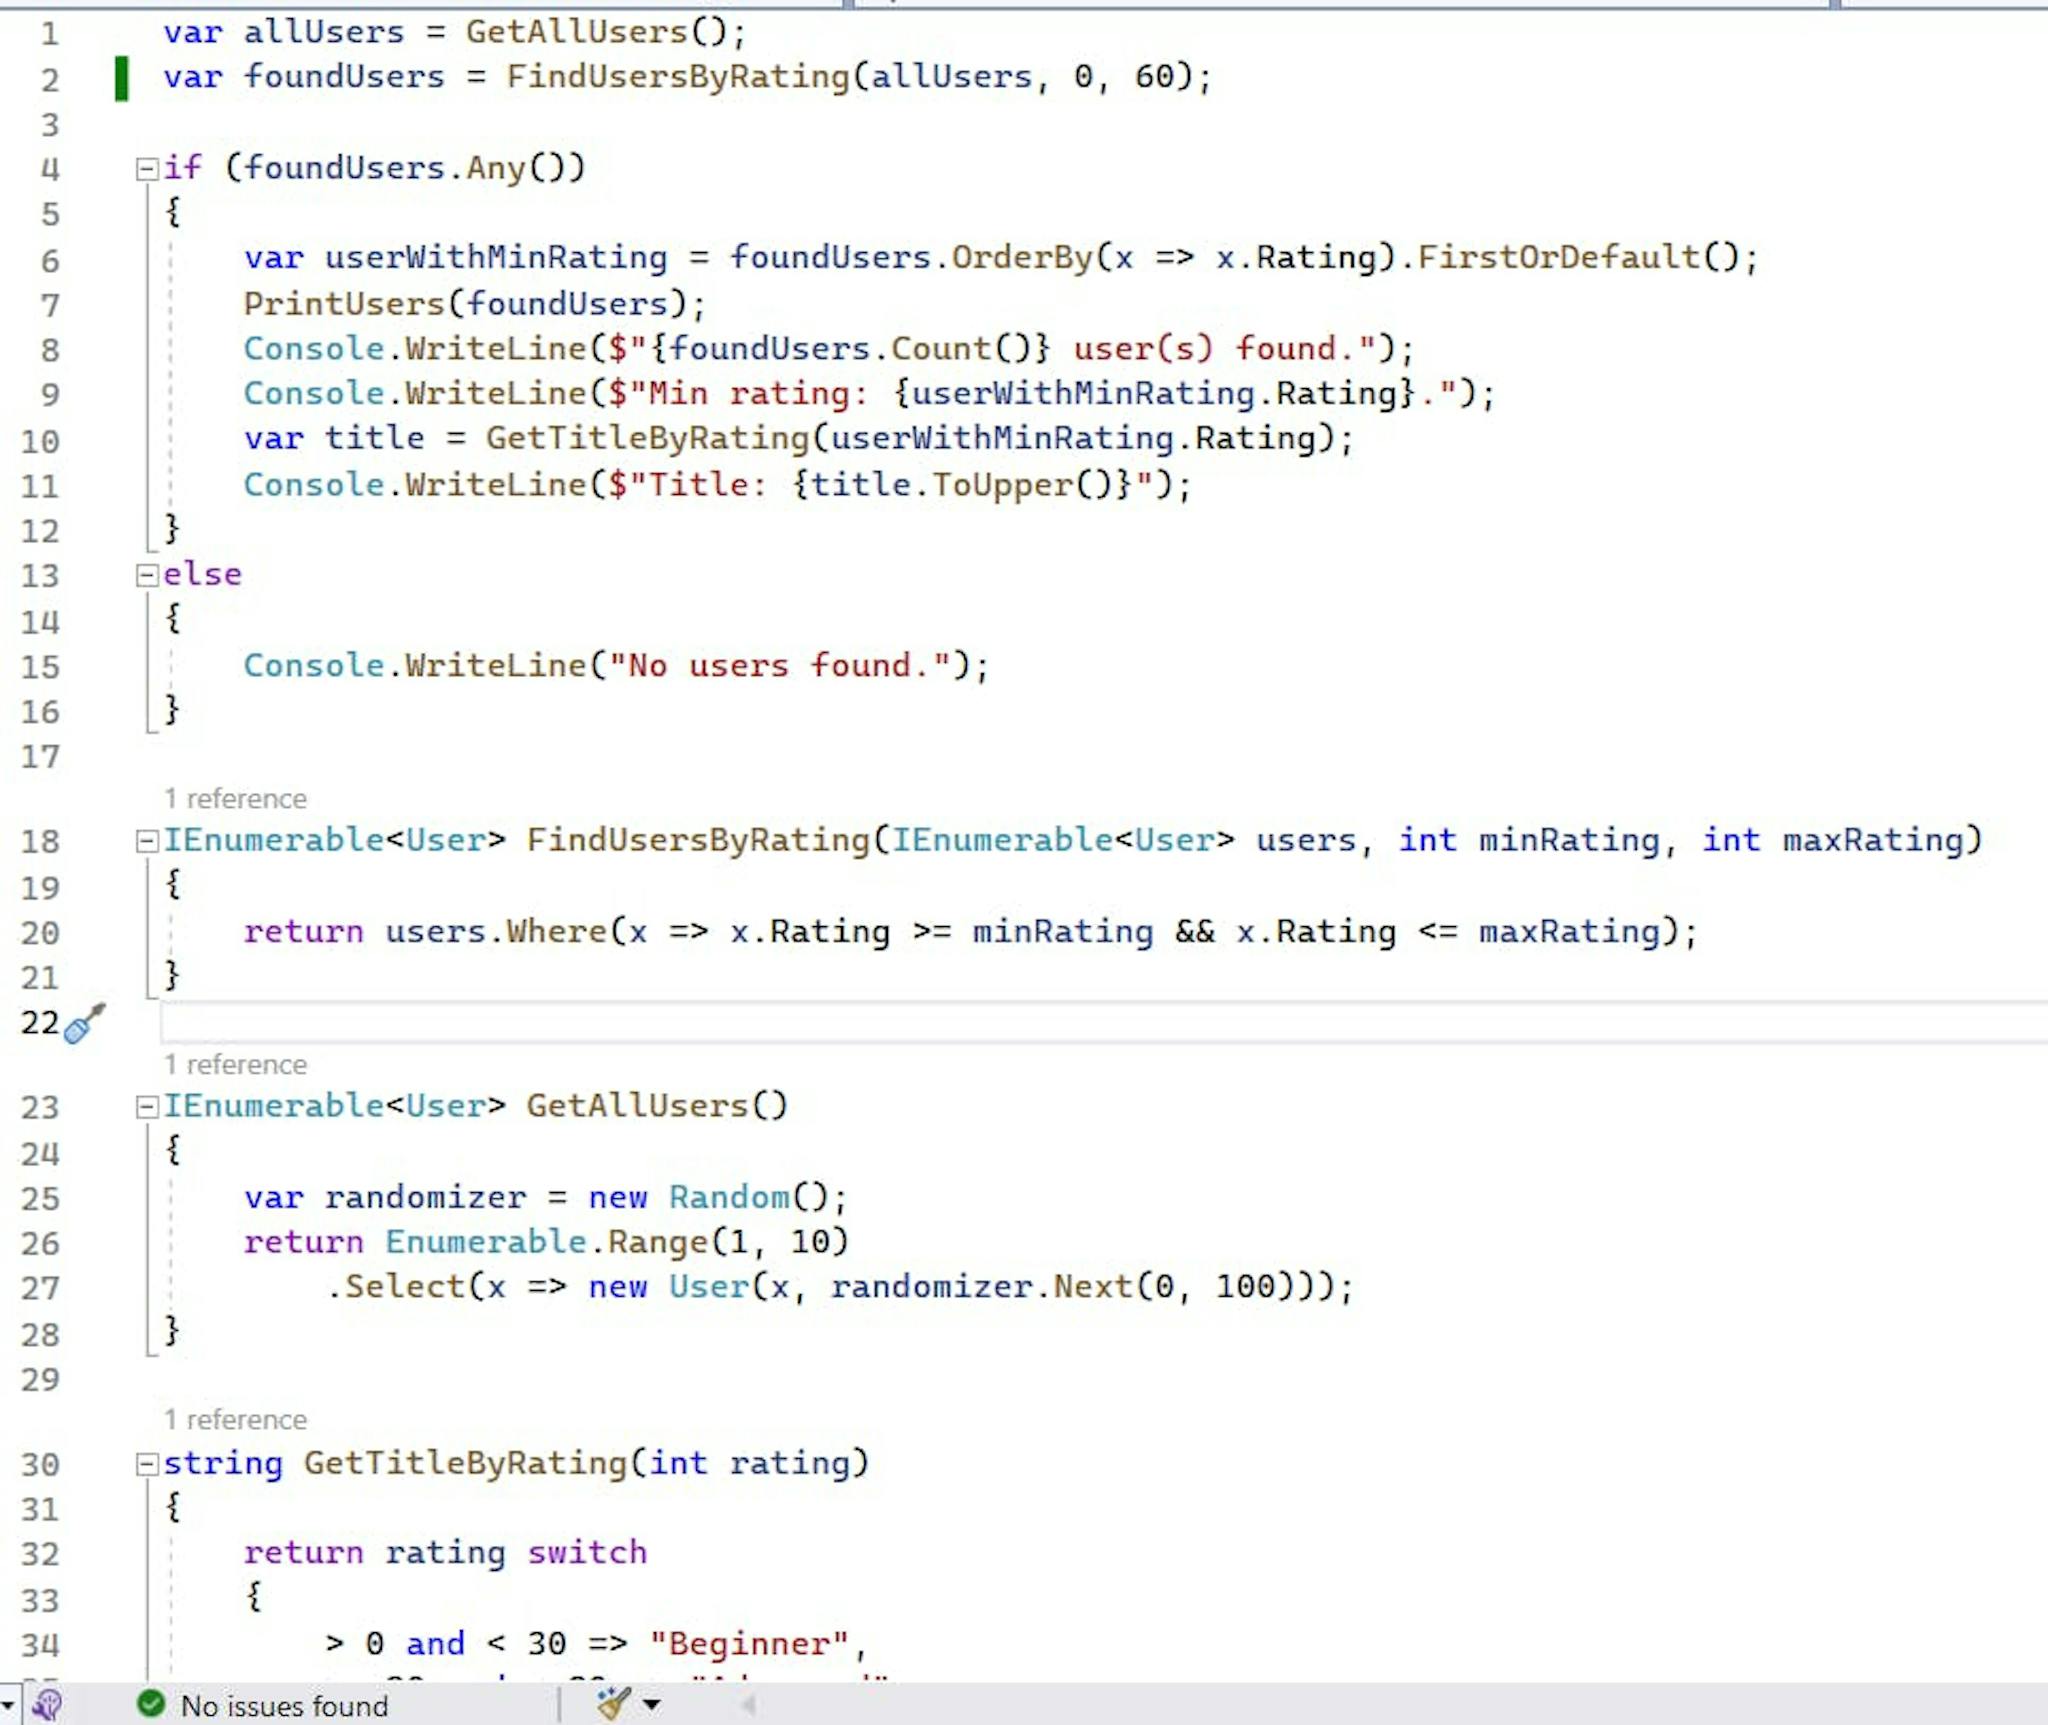 Visual Studio 2022 code analyzer